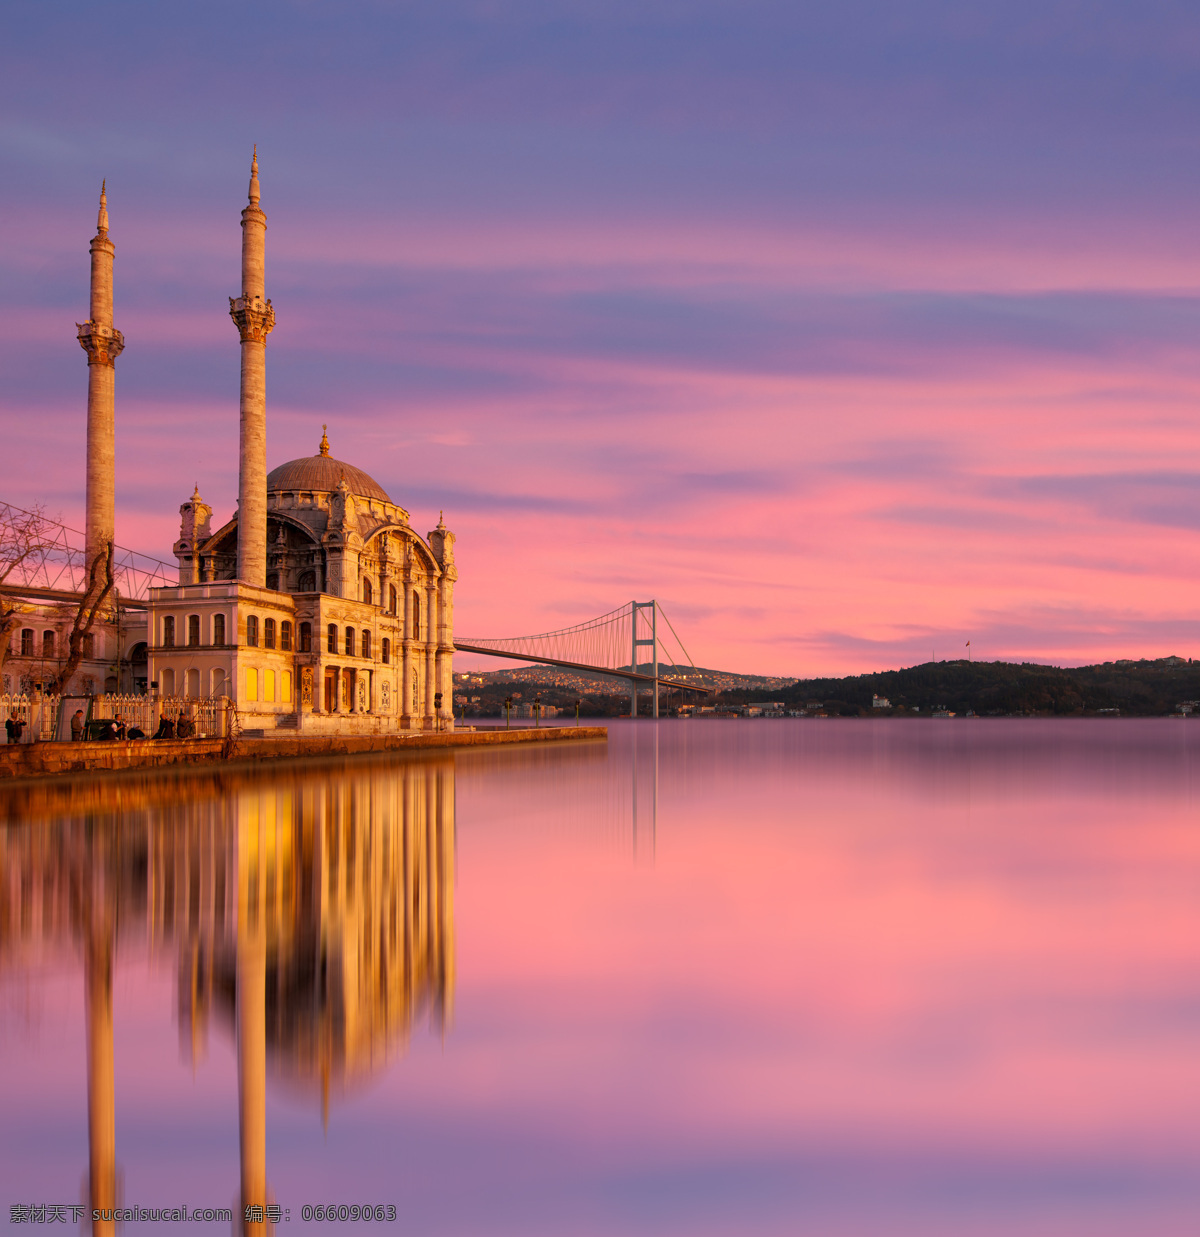 土耳其 建筑 风景 伊斯坦布尔 城市 风光 城市风景 风景摄影 美丽风景 旅游景点 其他风光 自然景观 城市风光 环境家居